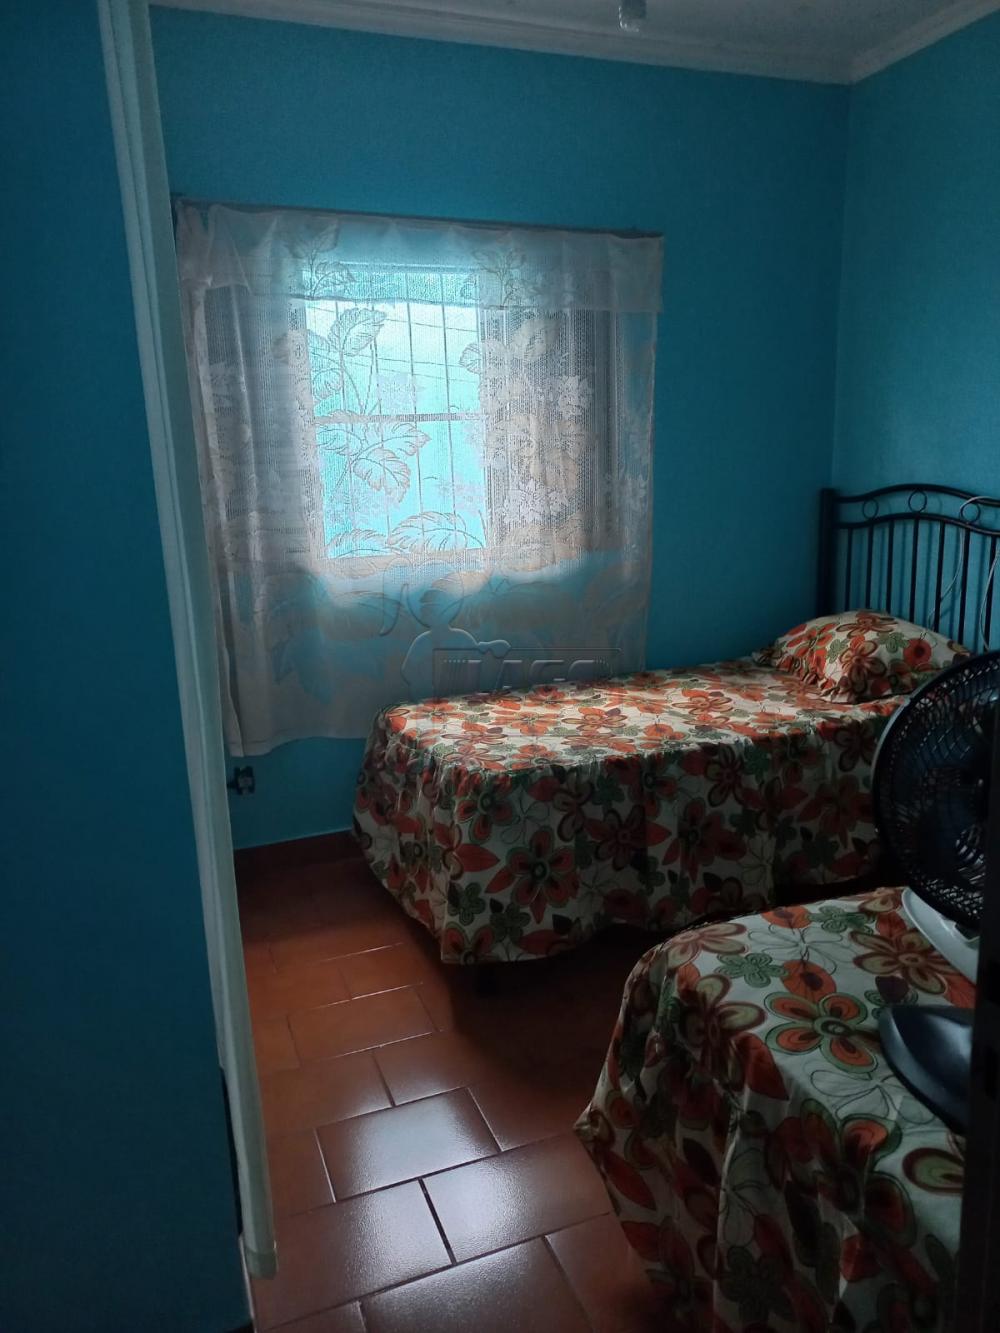 Comprar Casa / Padrão em Ribeirão Preto R$ 370.000,00 - Foto 6